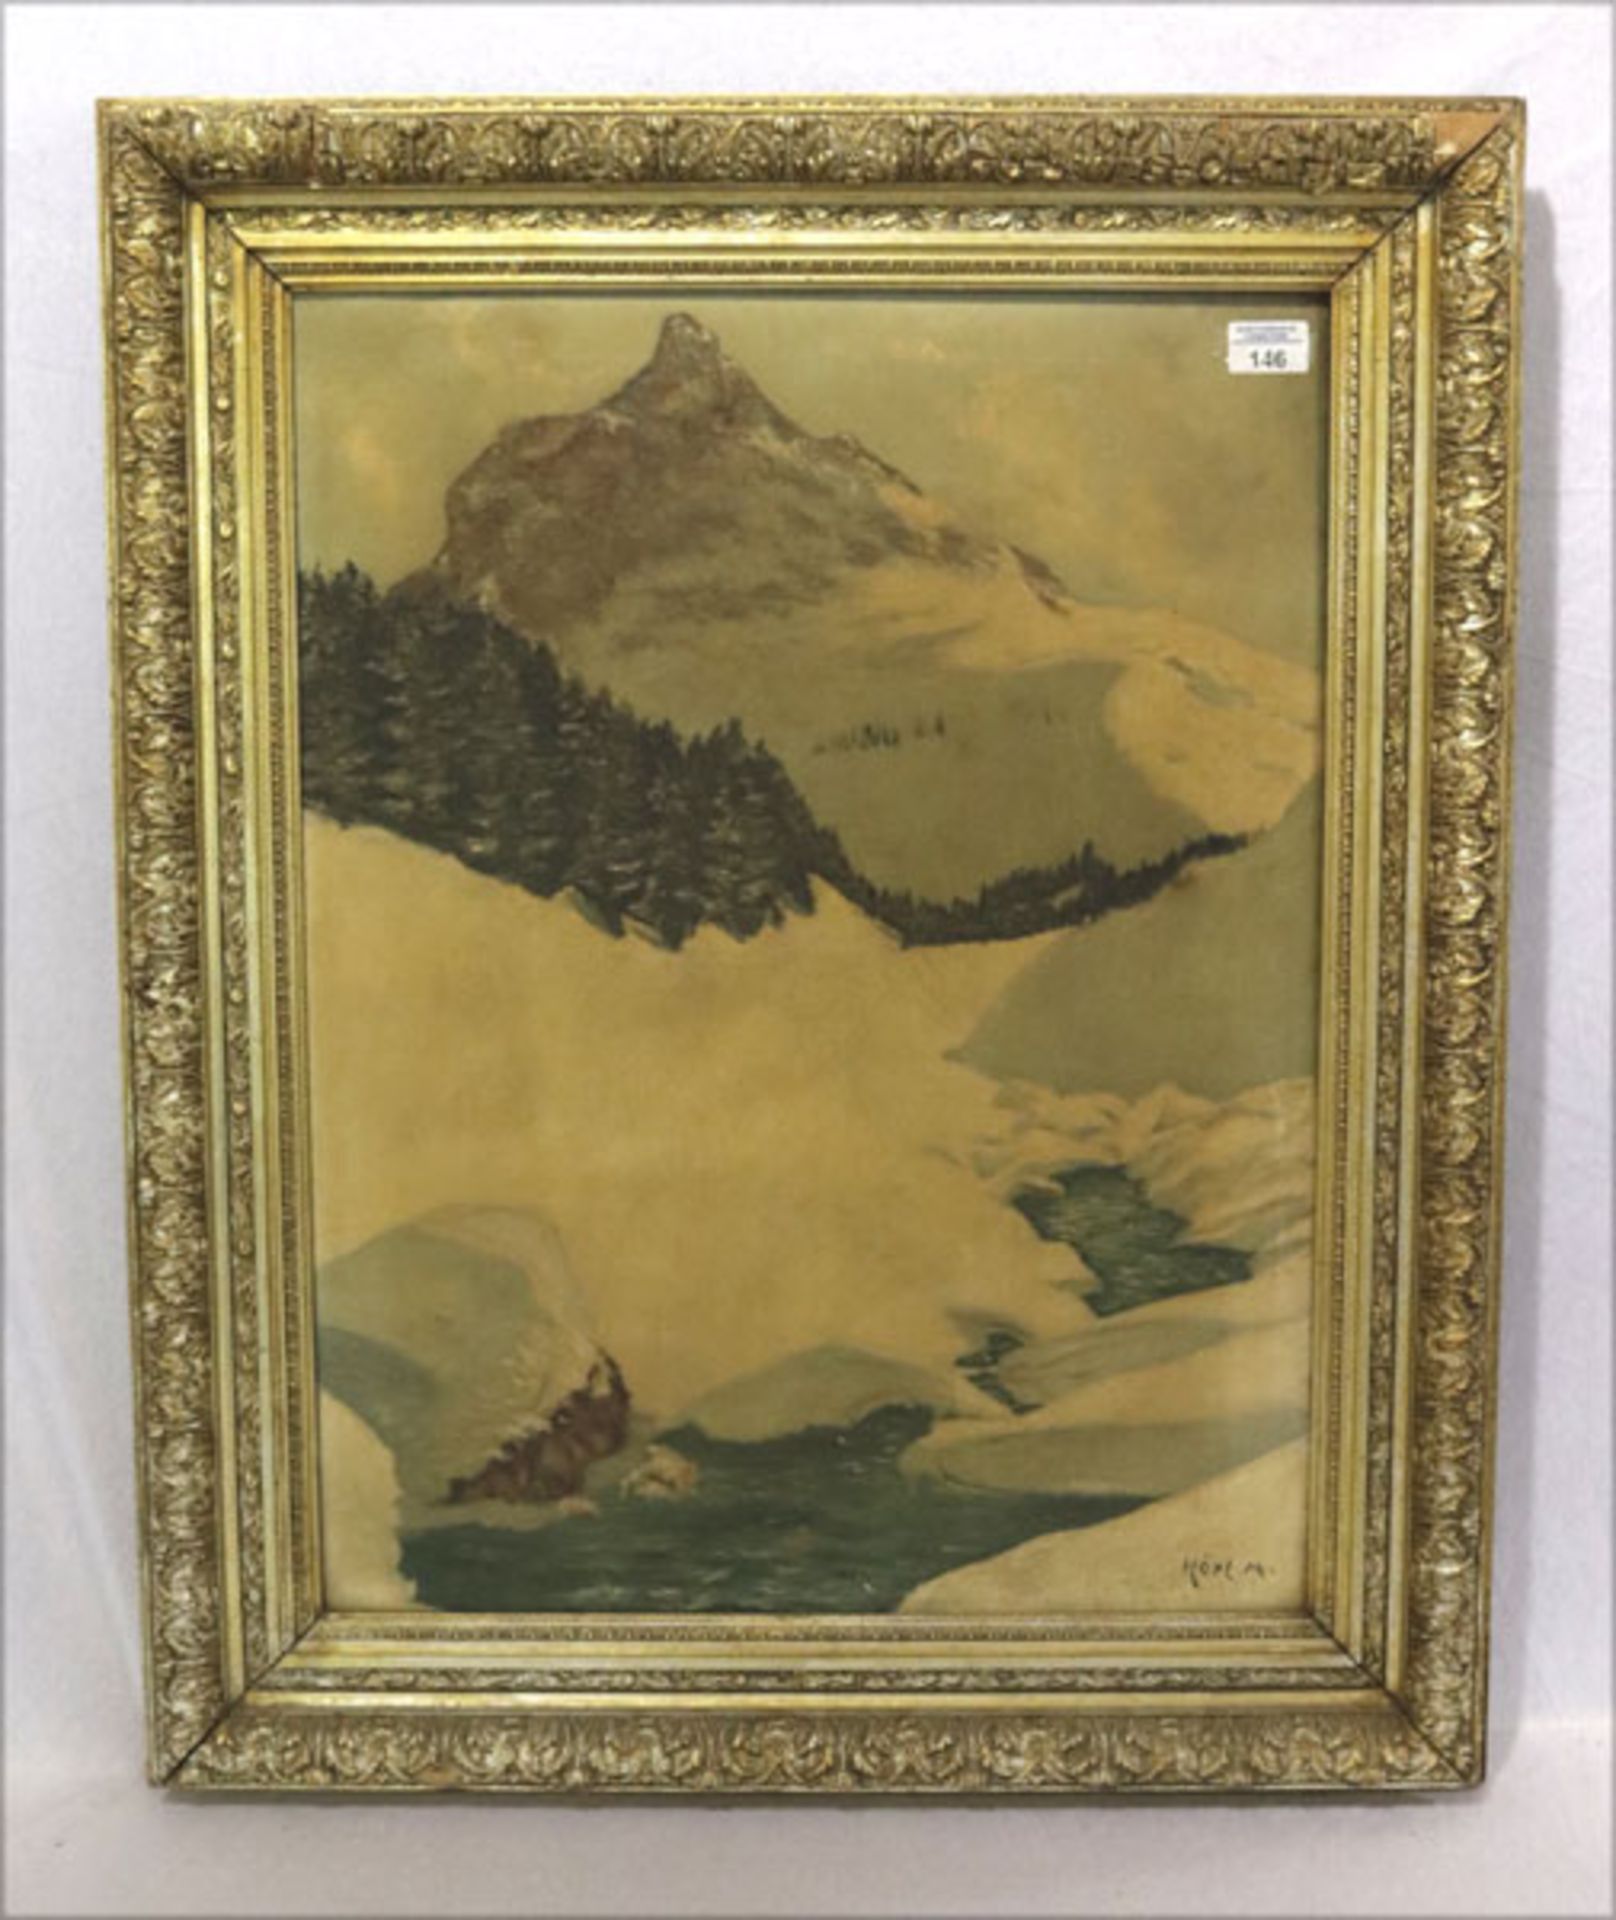 Gemälde ÖL/LW 'Winter im Hochgebirge', signiert Hörl M., Bildoberfläche beschädigt, gerahmt,